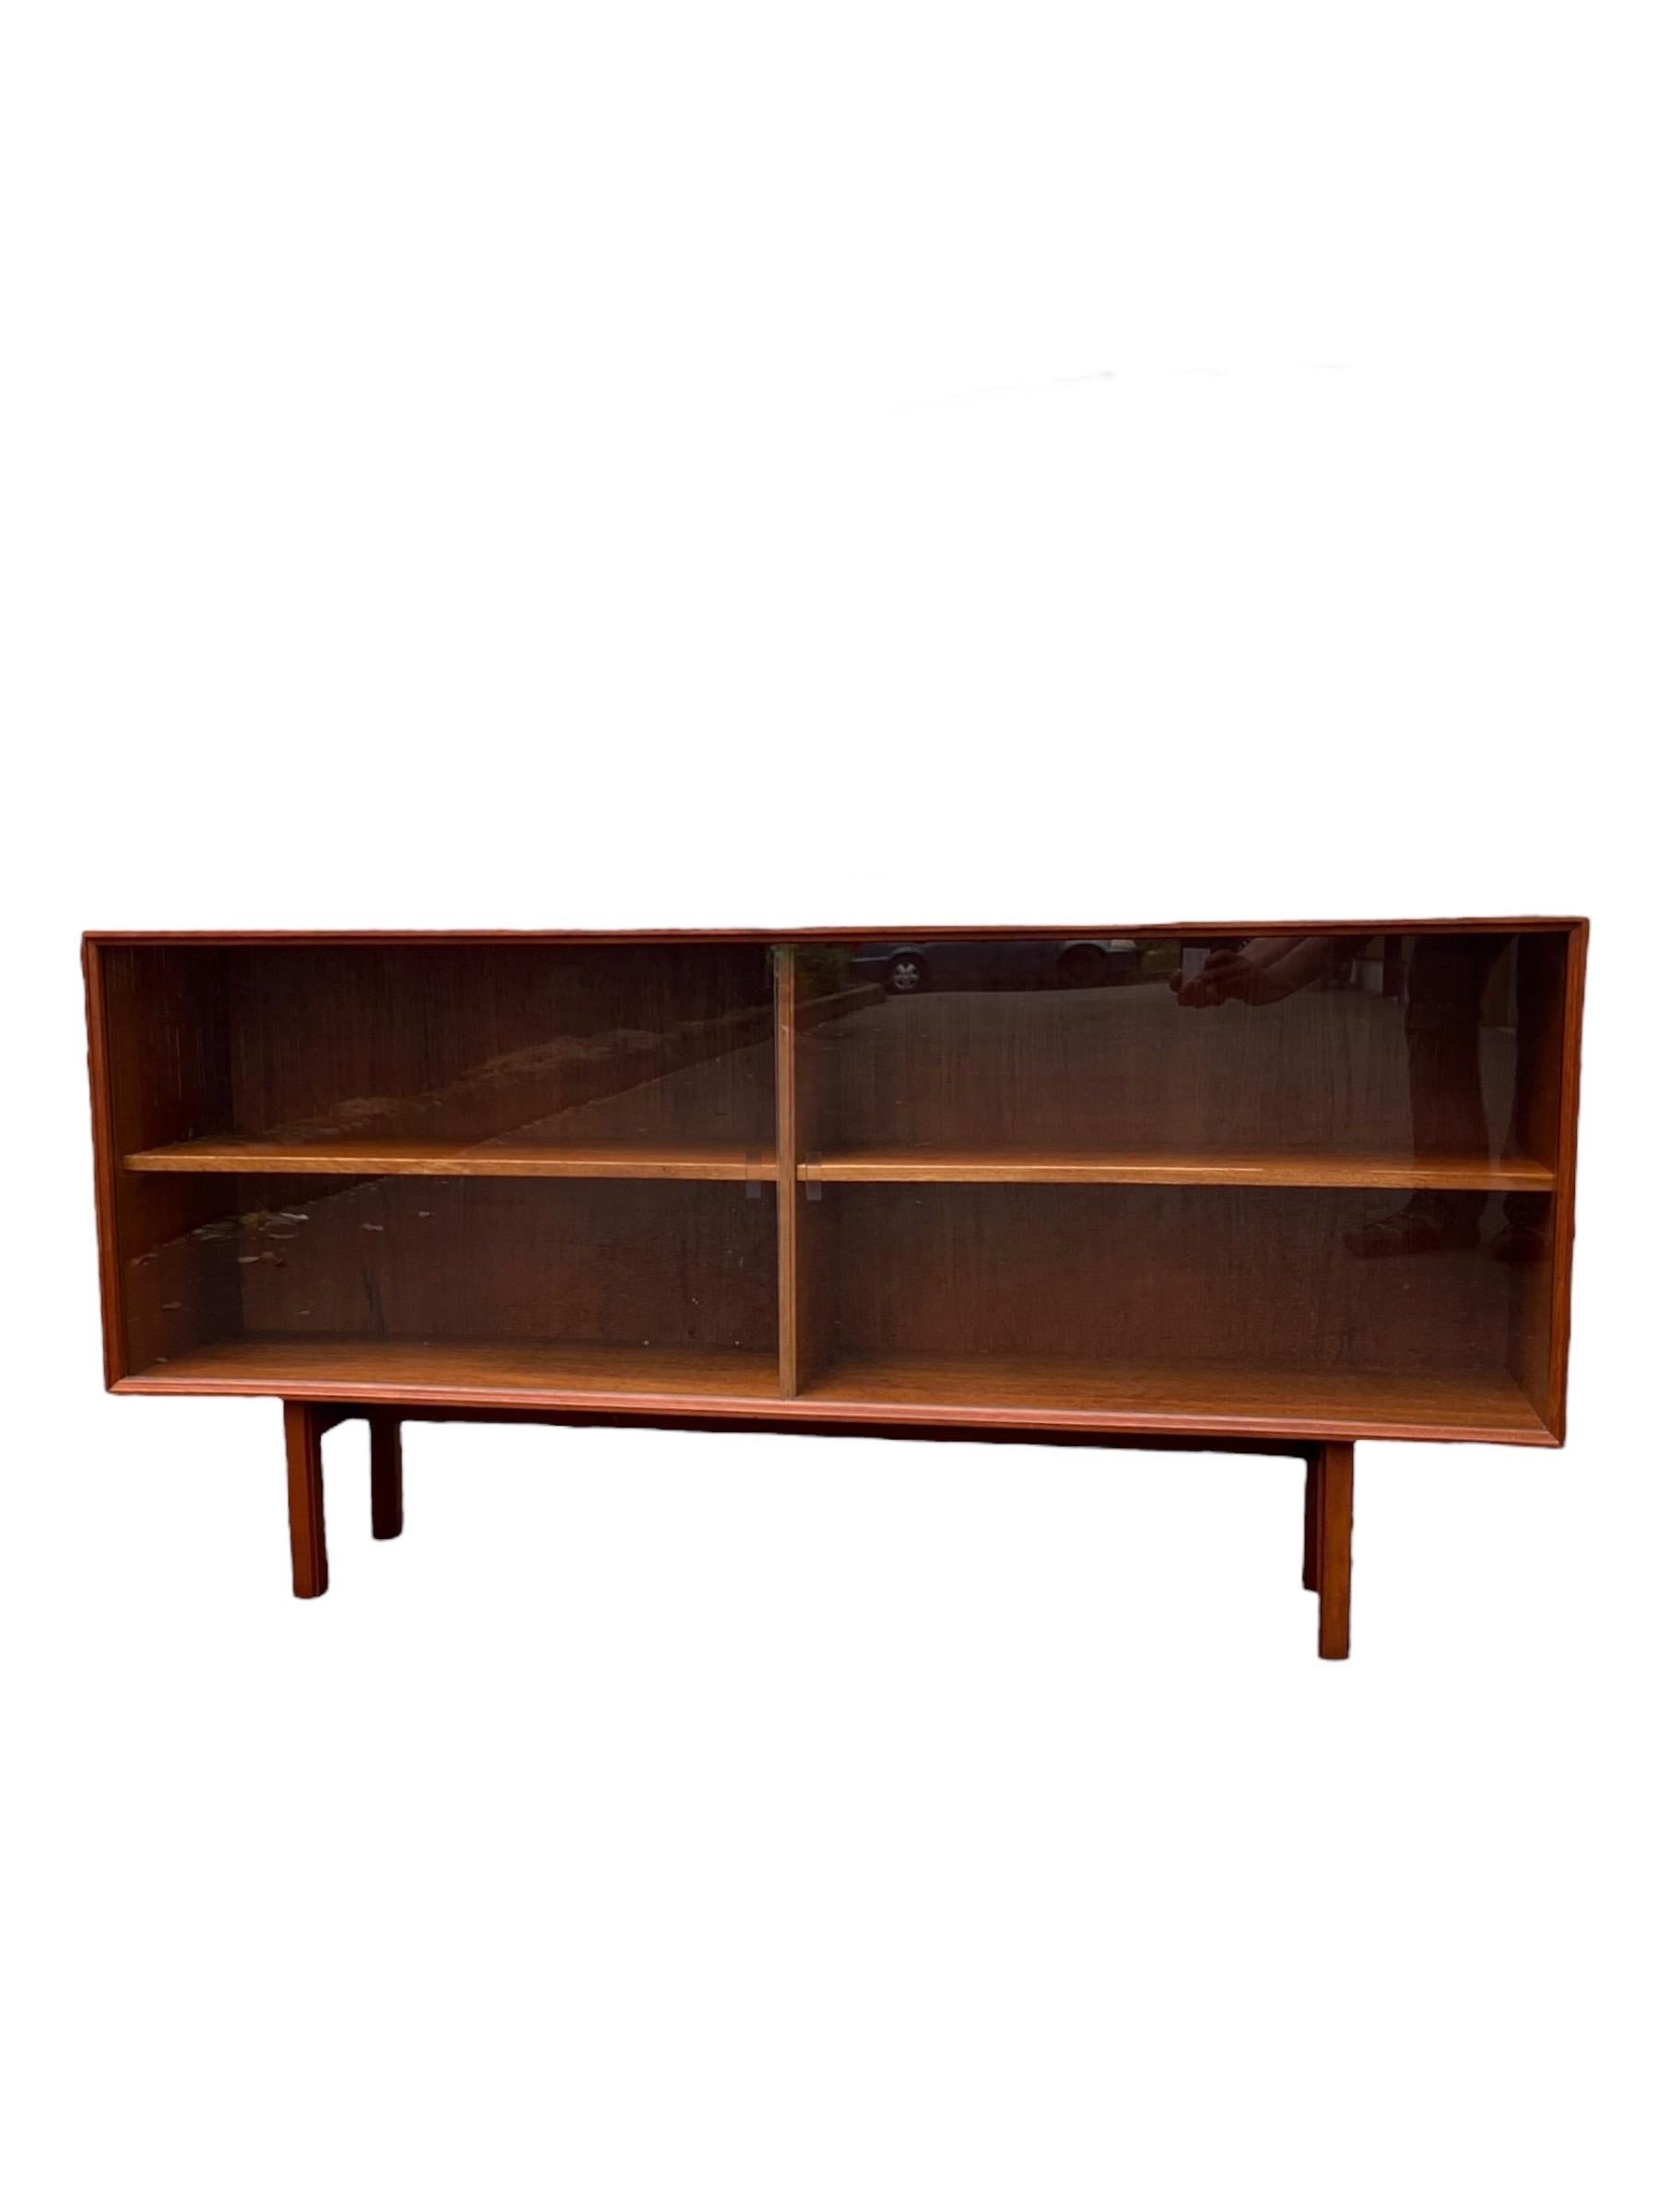 Vintage Danish Mid Century Modern Teck Book Shelf Display Cabinet Adjustable Shelf.

Dimensions. 60 L ; 12 1/2 P ; 29 H
Intérieur (droite). 29 1/2 L ; 11 1/2 P ; 18 3/4 H
Intérieur (gauche). 29 1/2 L ; 11 1/2 P ; 18 3/4 H